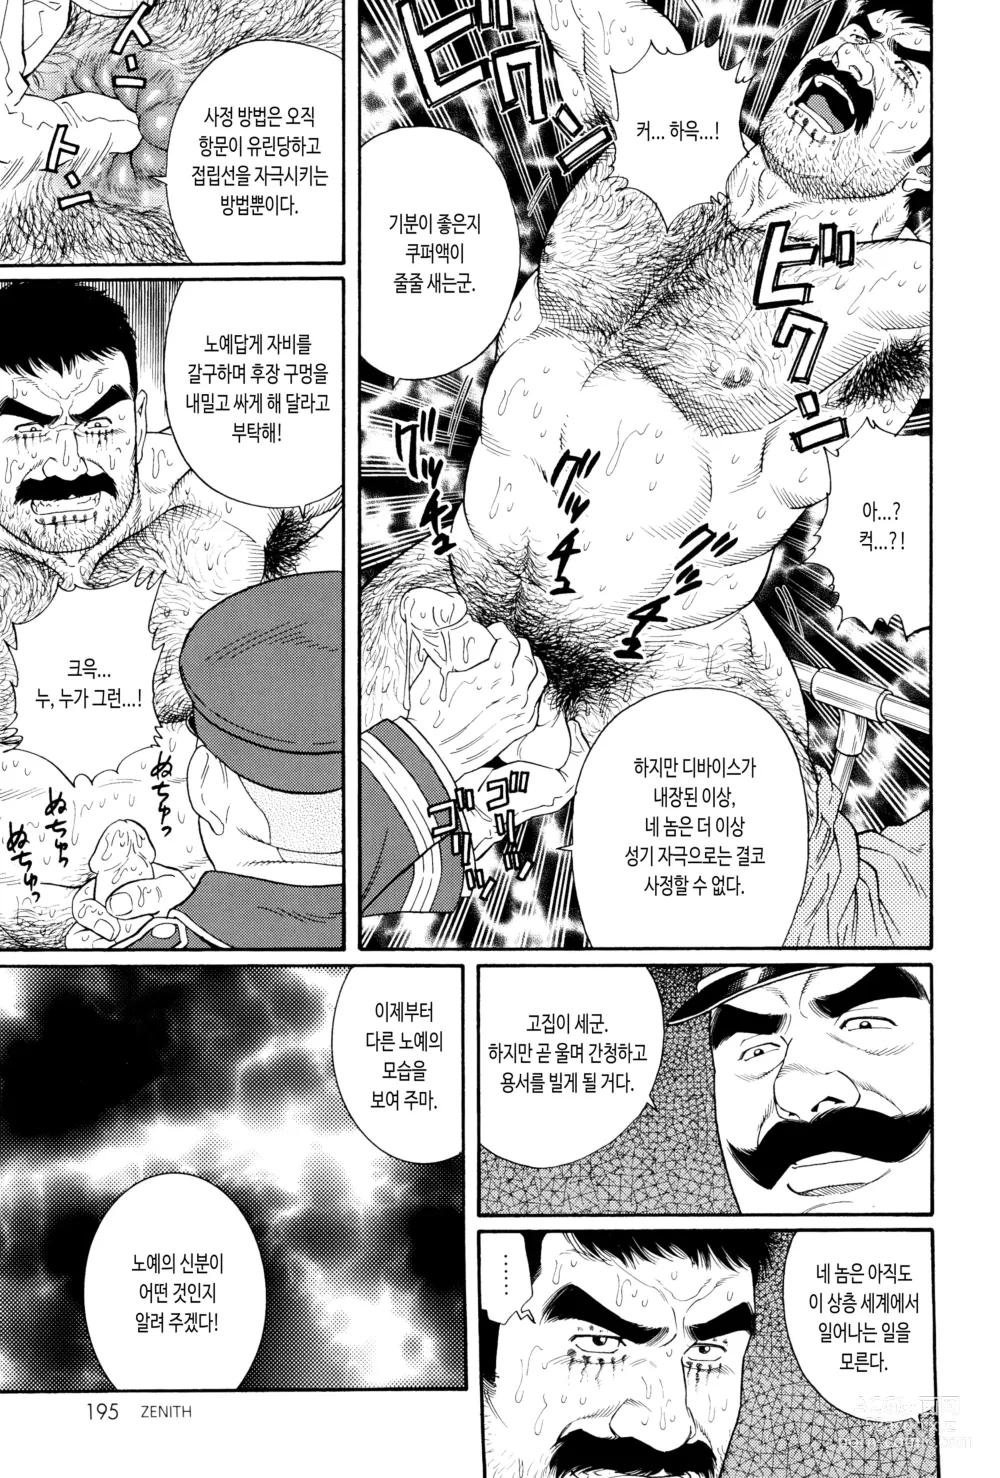 Page 9 of manga ZENITH